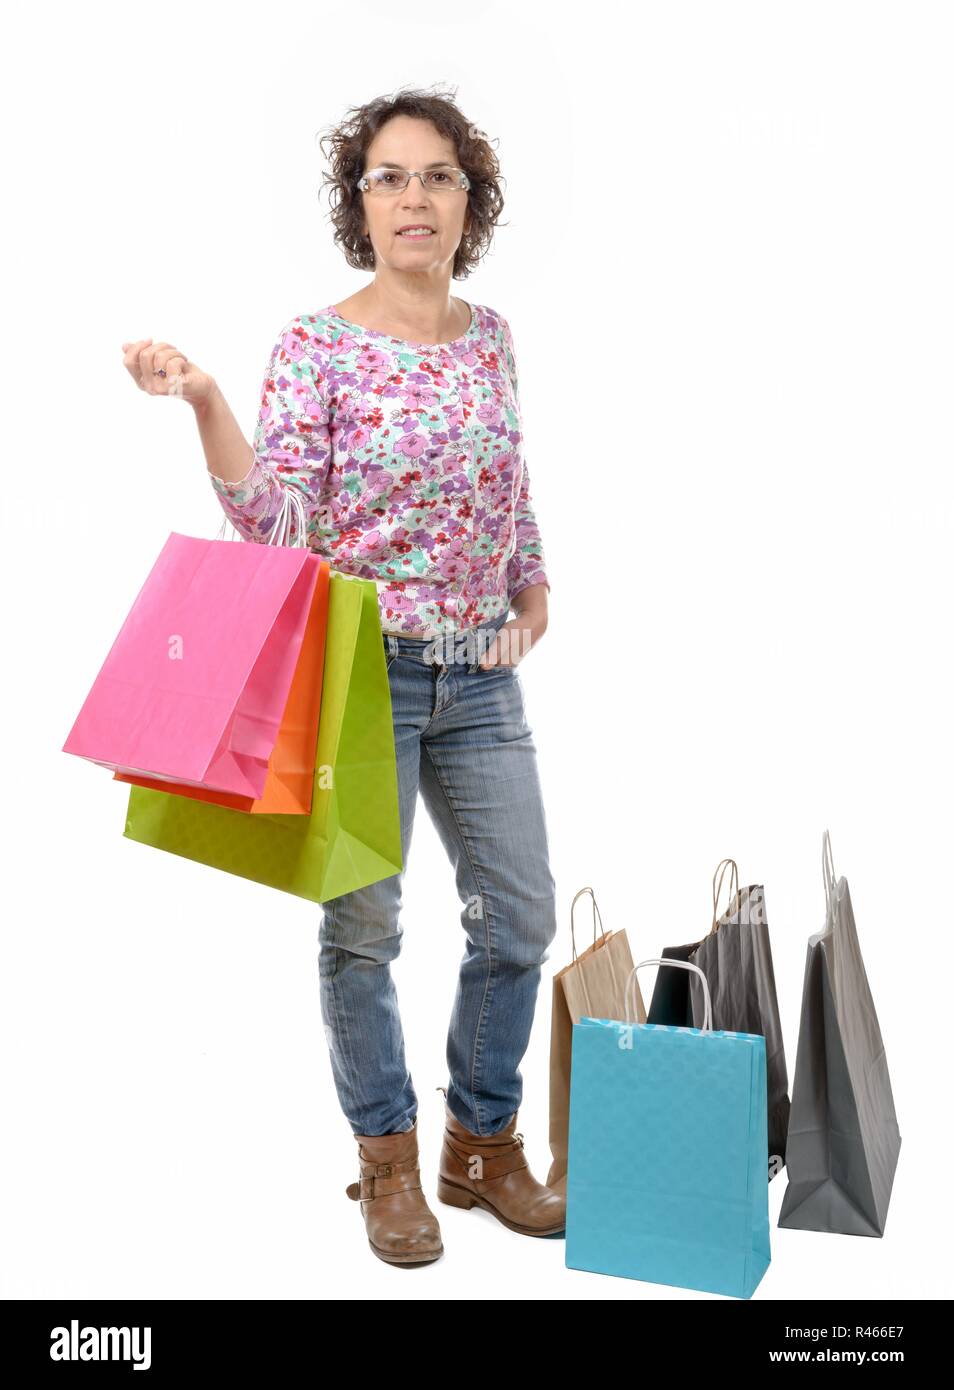 Femme mature avec des lunettes est allé shopping sur fond blanc Banque D'Images